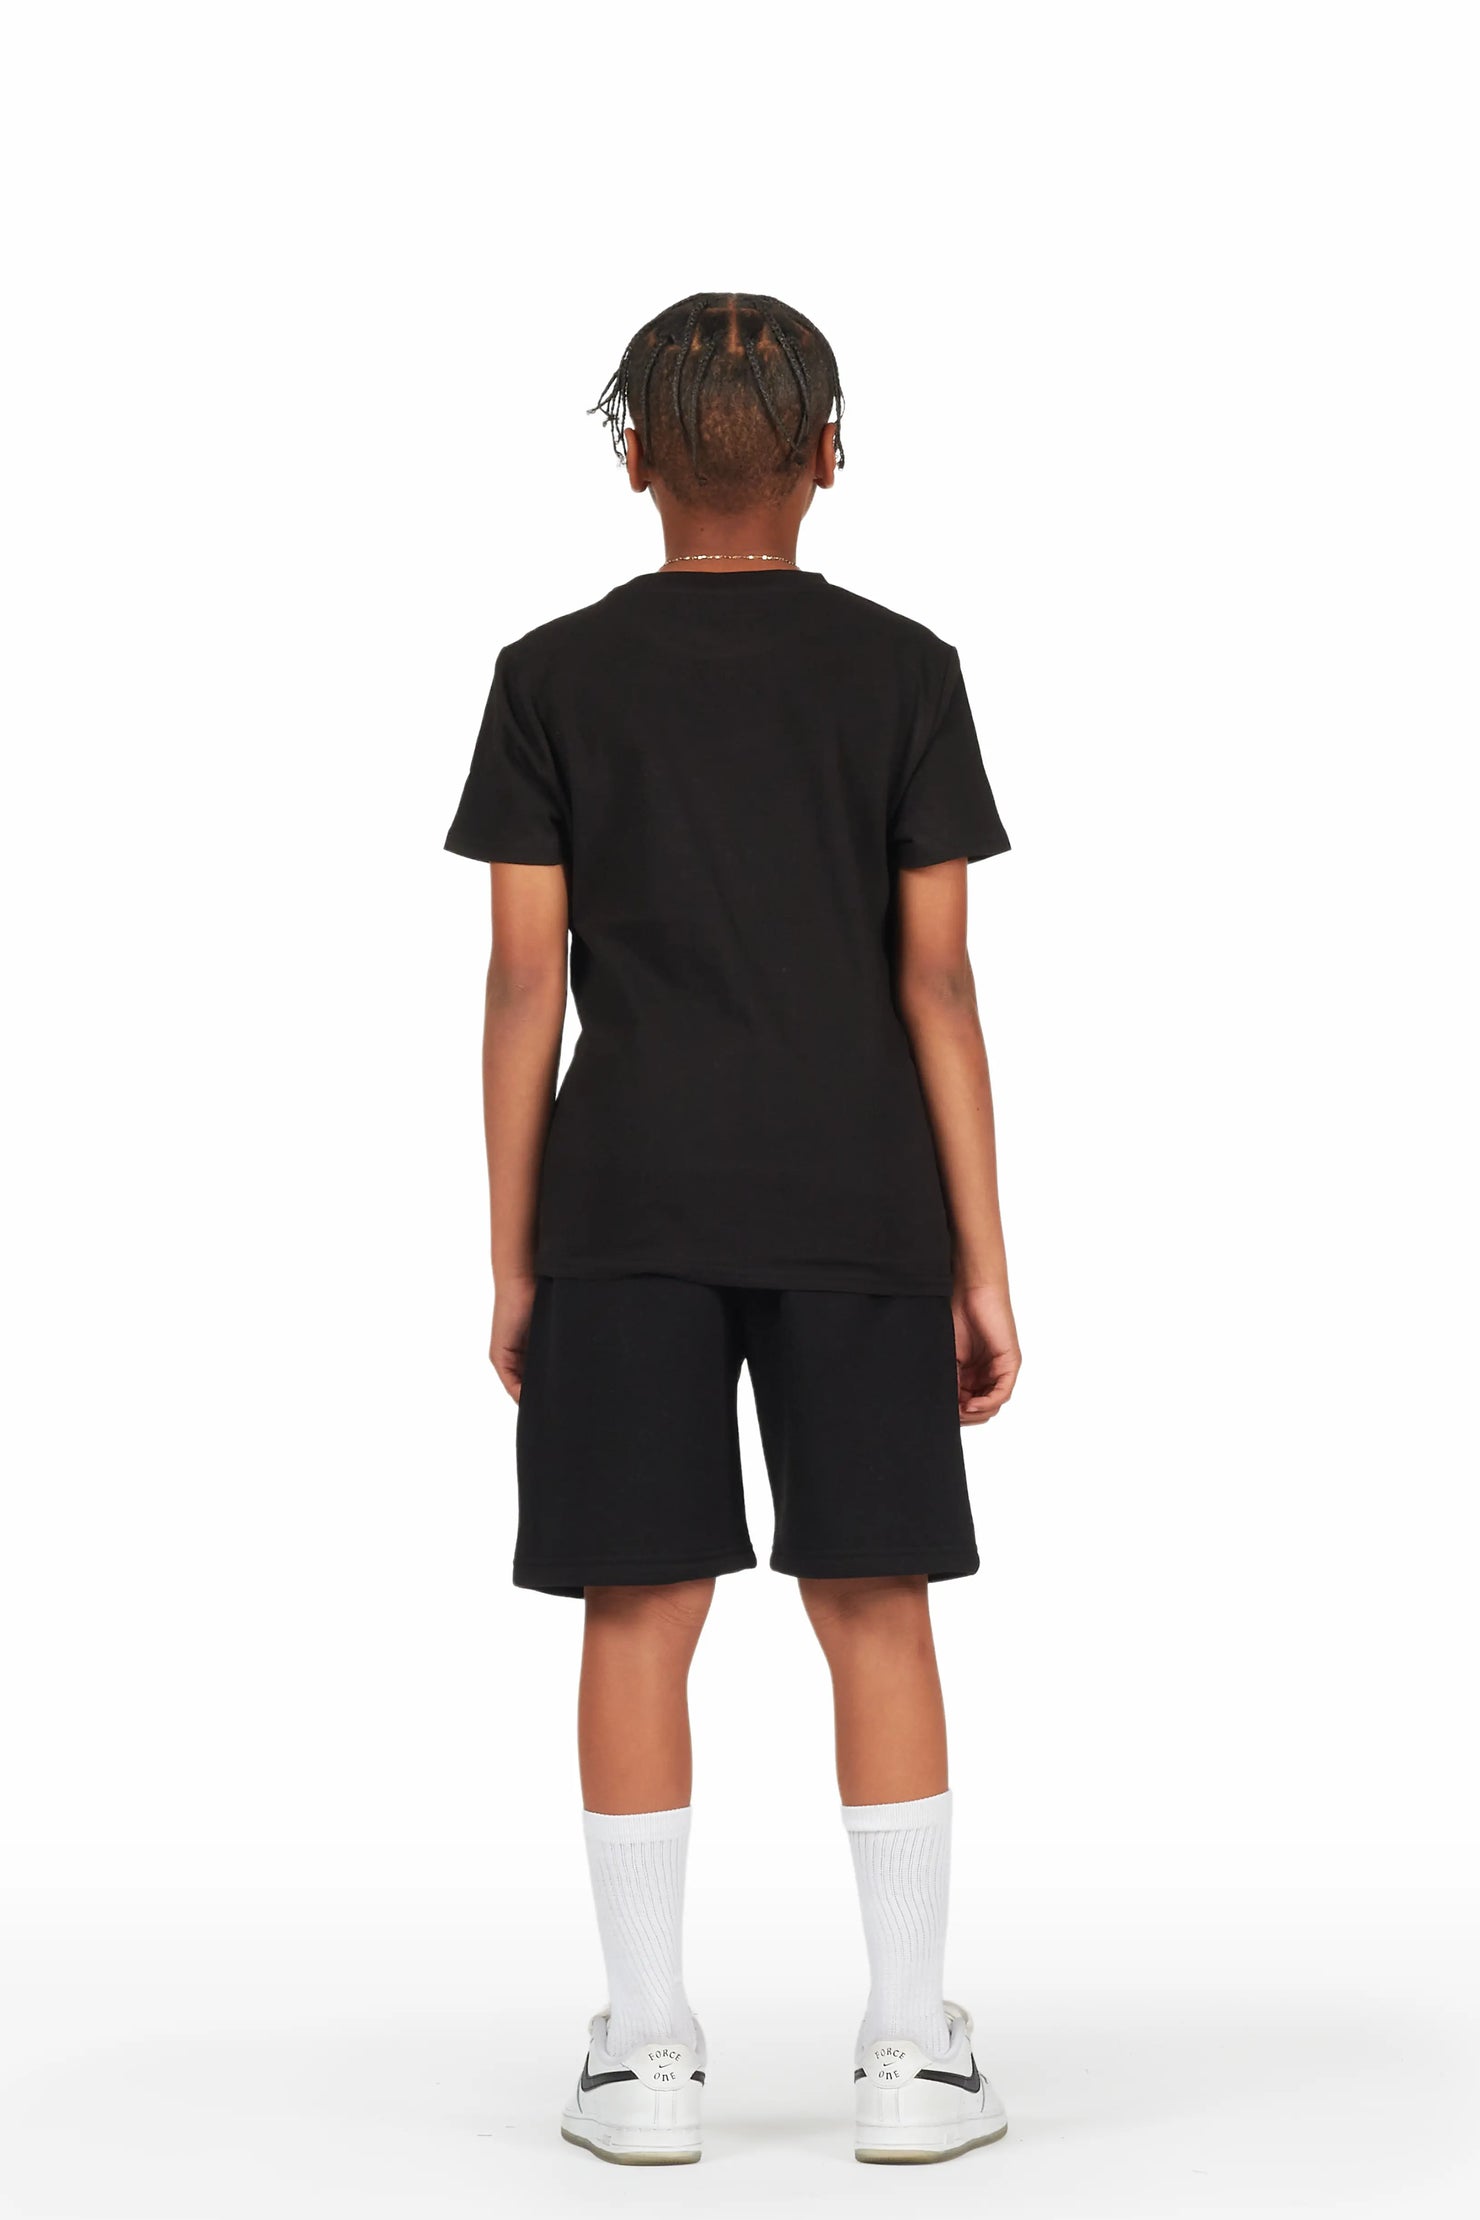 Boys Draven Black T-Shirt Short Set